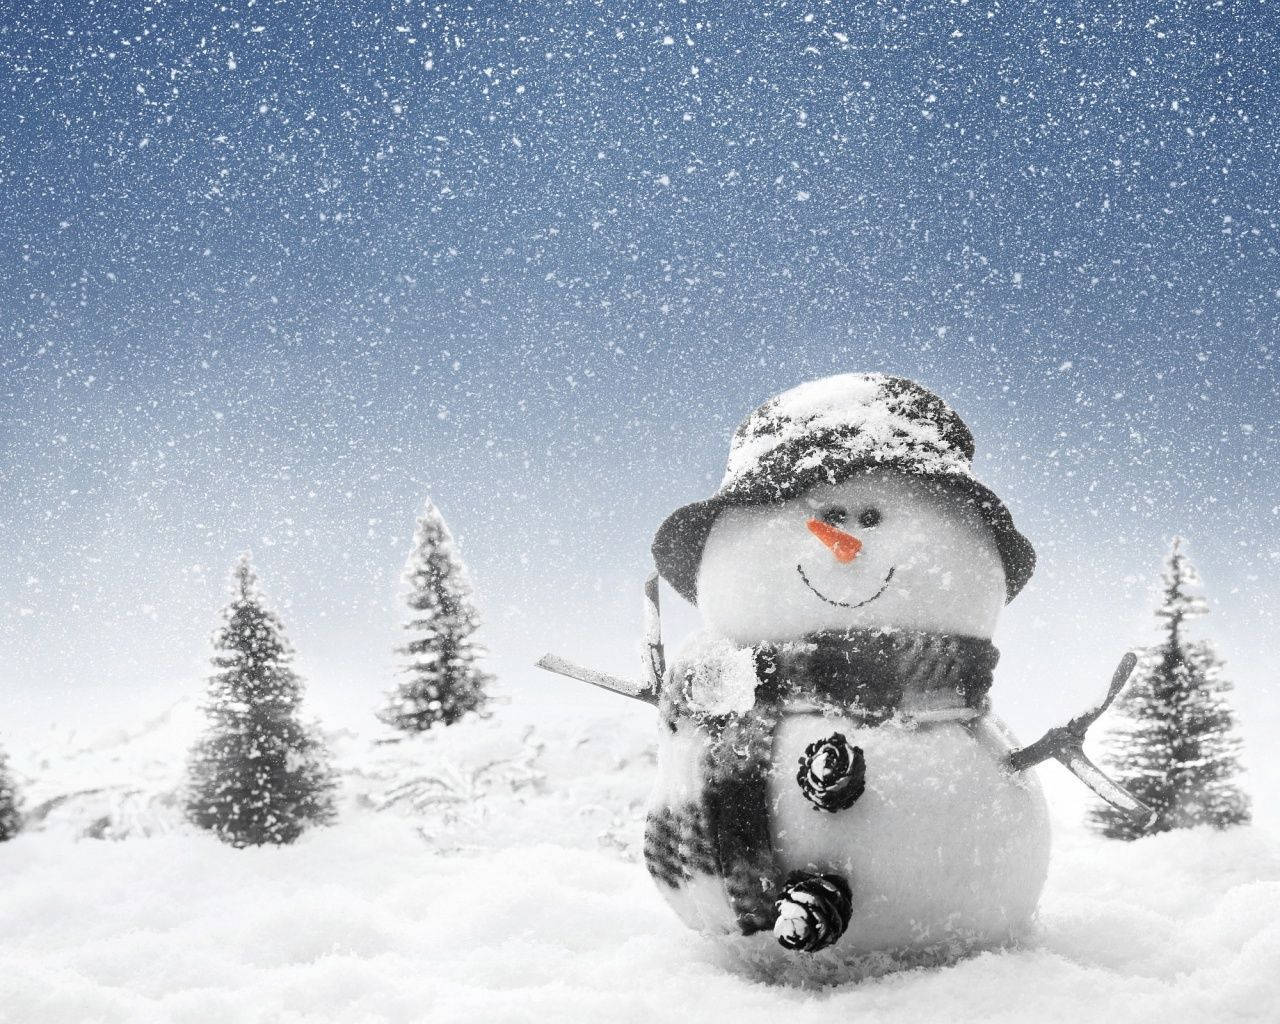 Snowman In Winter Wonderland Wallpaper